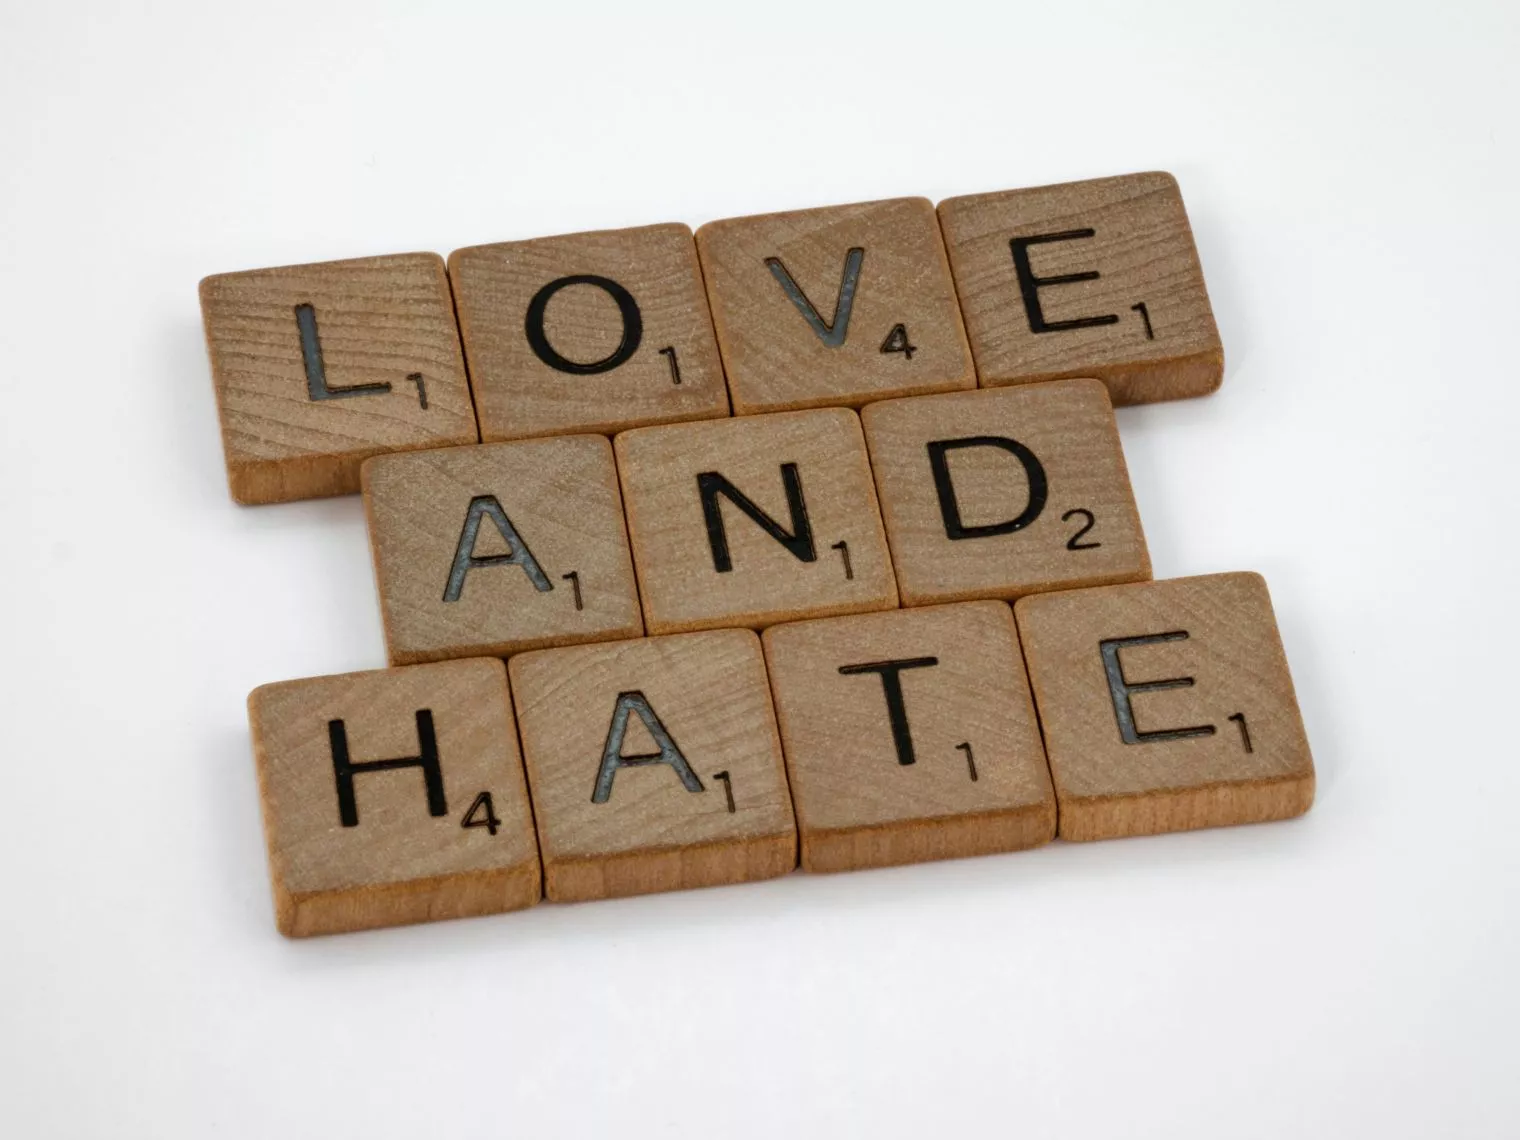 Hubunganmu Love-Hate Relationship Bukan sih? Kenali, yuk!